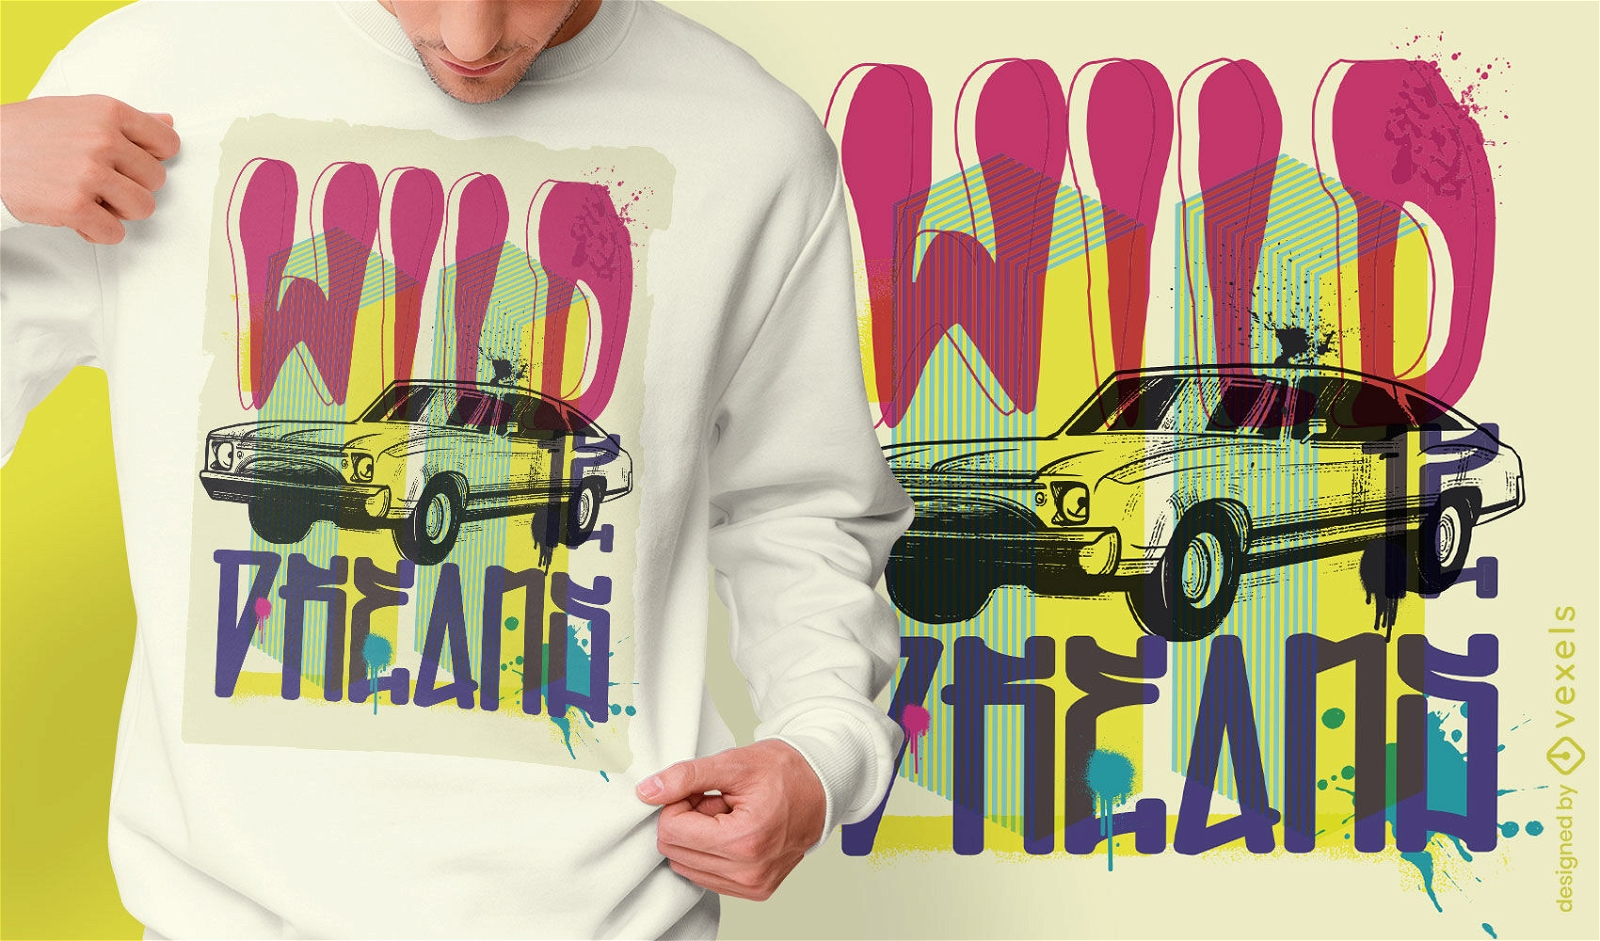 Auto Fahrzeug Urban Graffiti T-Shirt Design